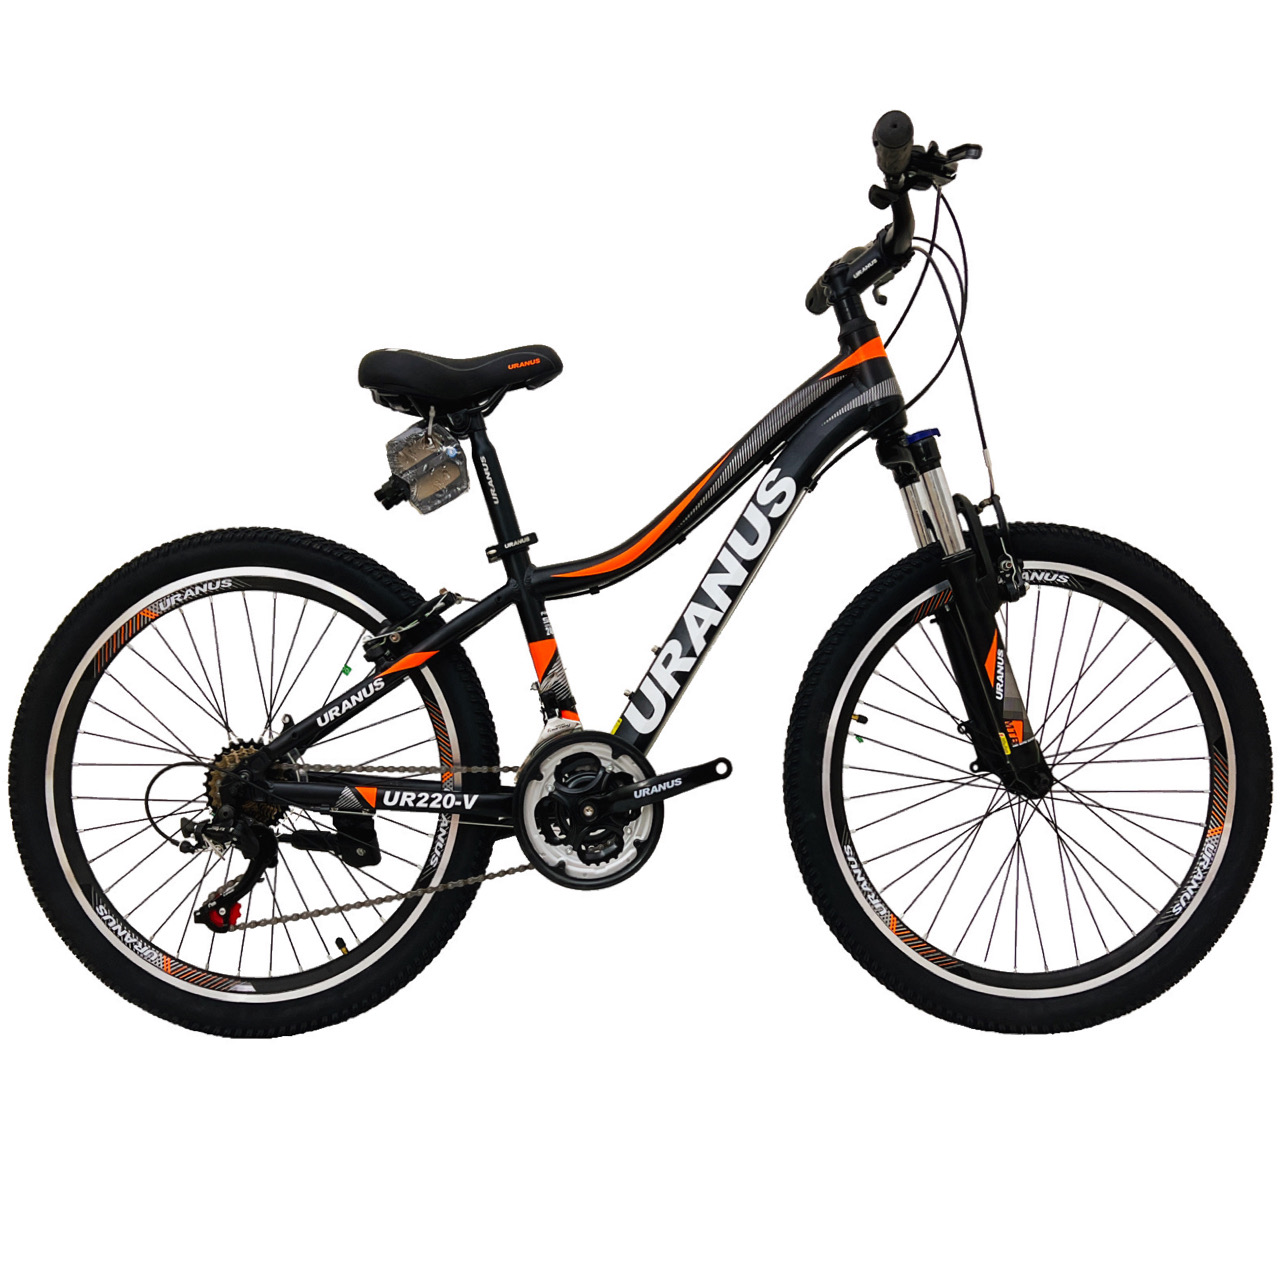 نکته خرید - قیمت روز دوچرخه کوهستان اورانوس مدل UR220-V سایز 24 خرید